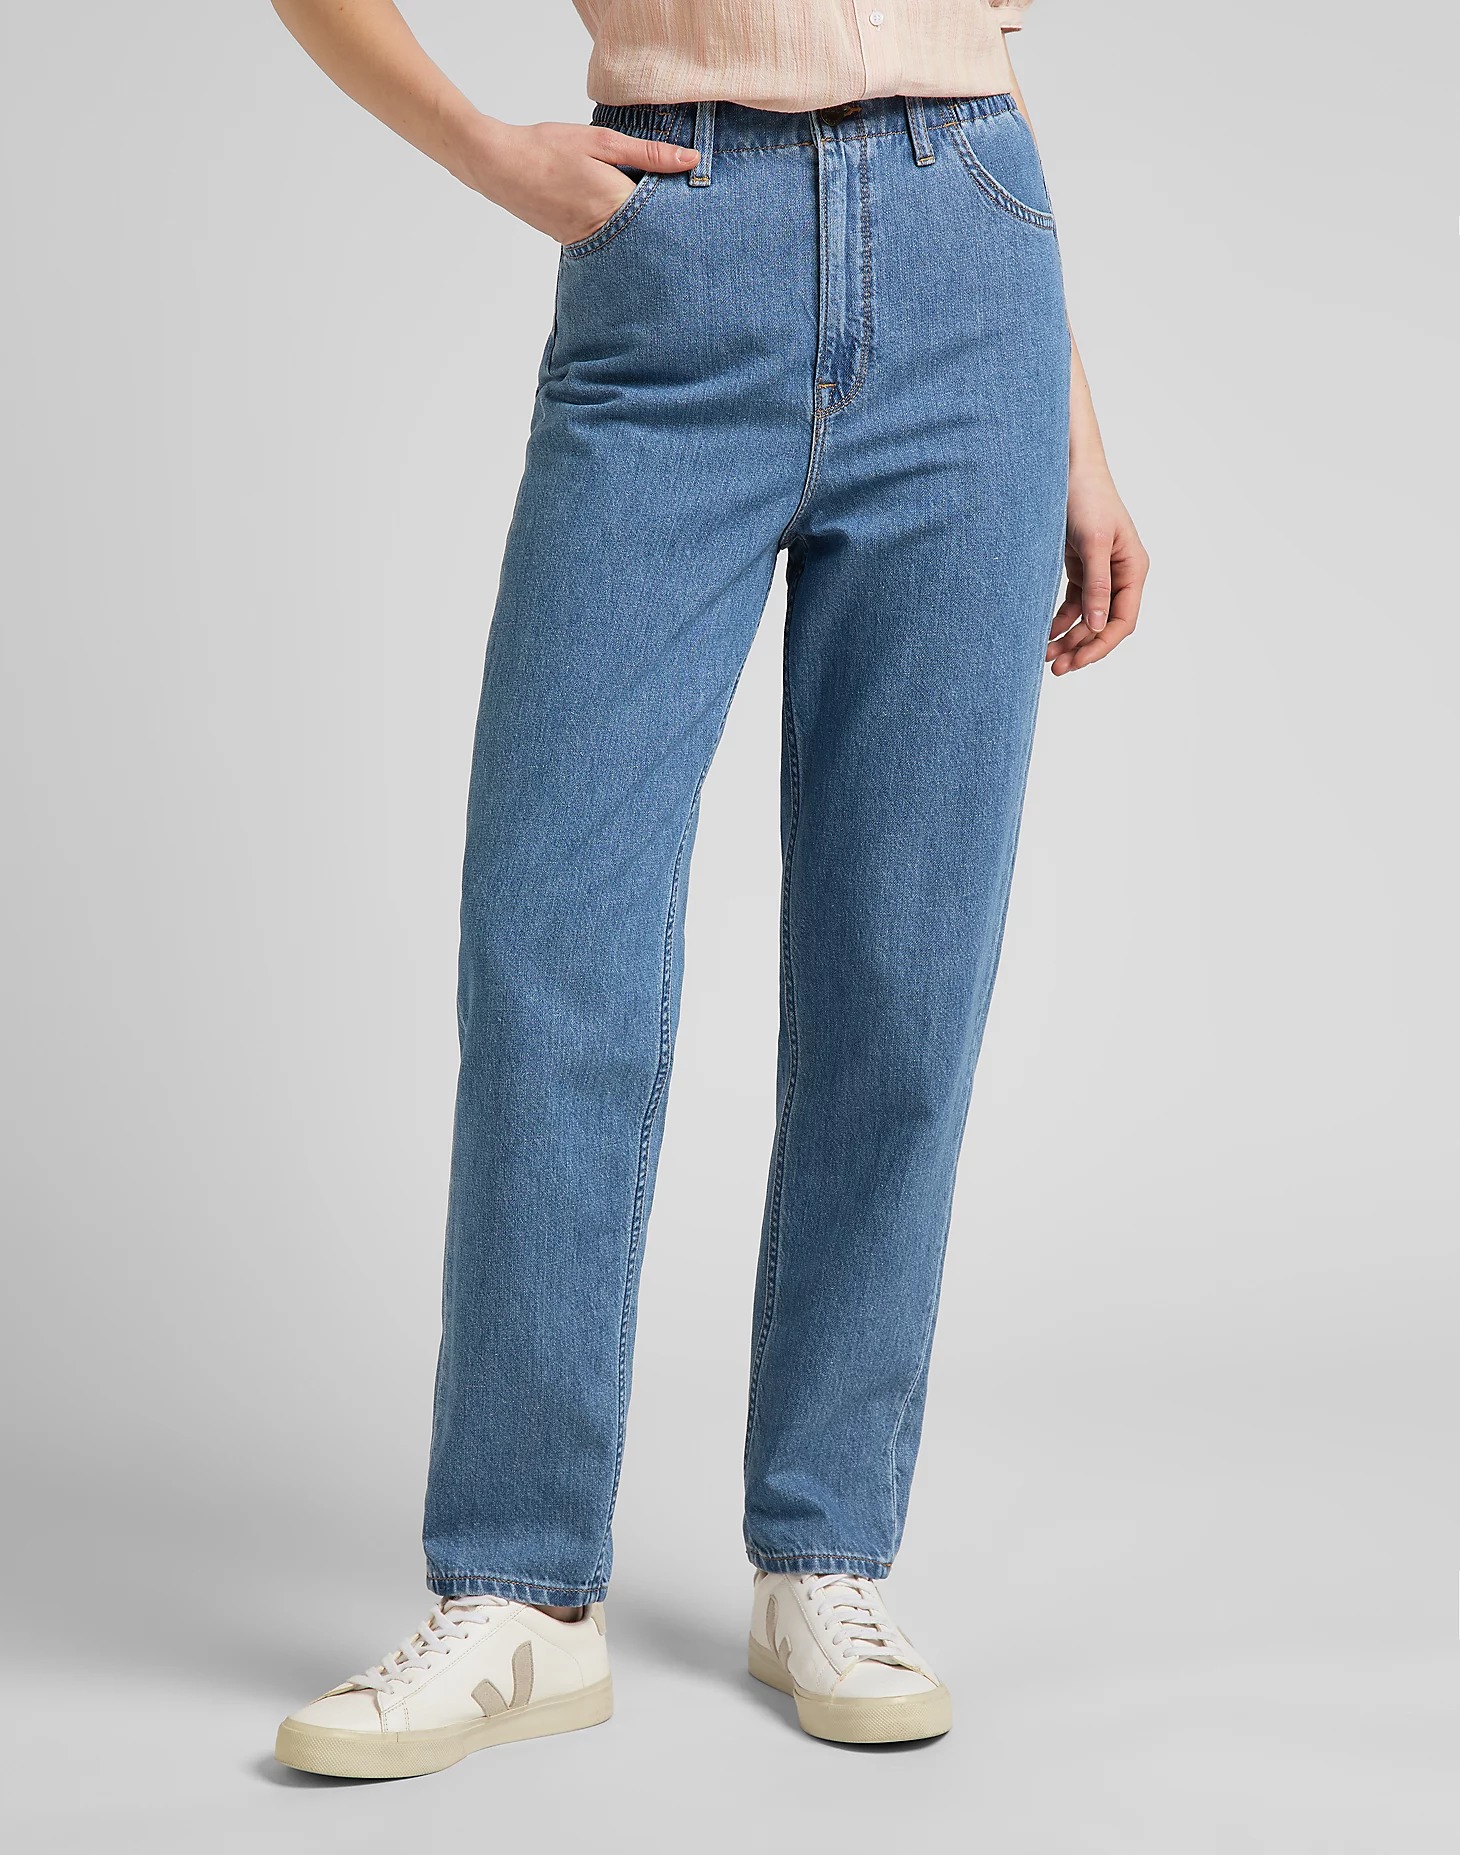 фото Джинсы женские lee women elasticated stella t jeans синие 32/33